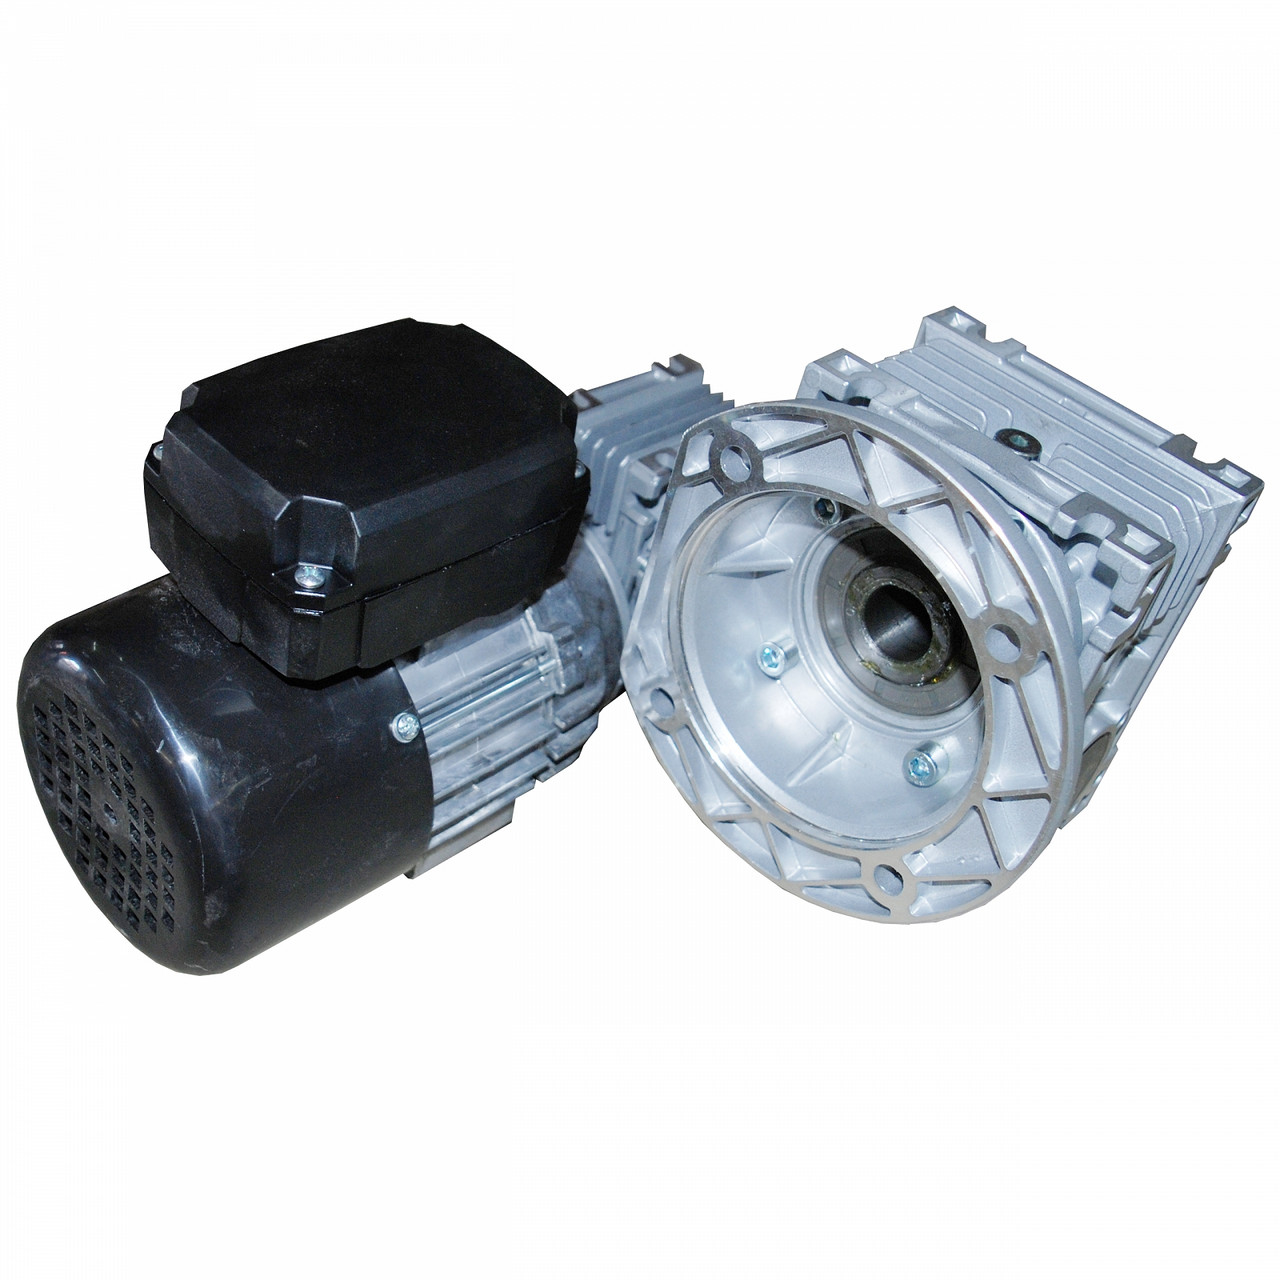 Моторедуктор NMRV030/050 електродвигун однофазний 0,18 kW - 5 об/хв подаючий механізм пальника i=300